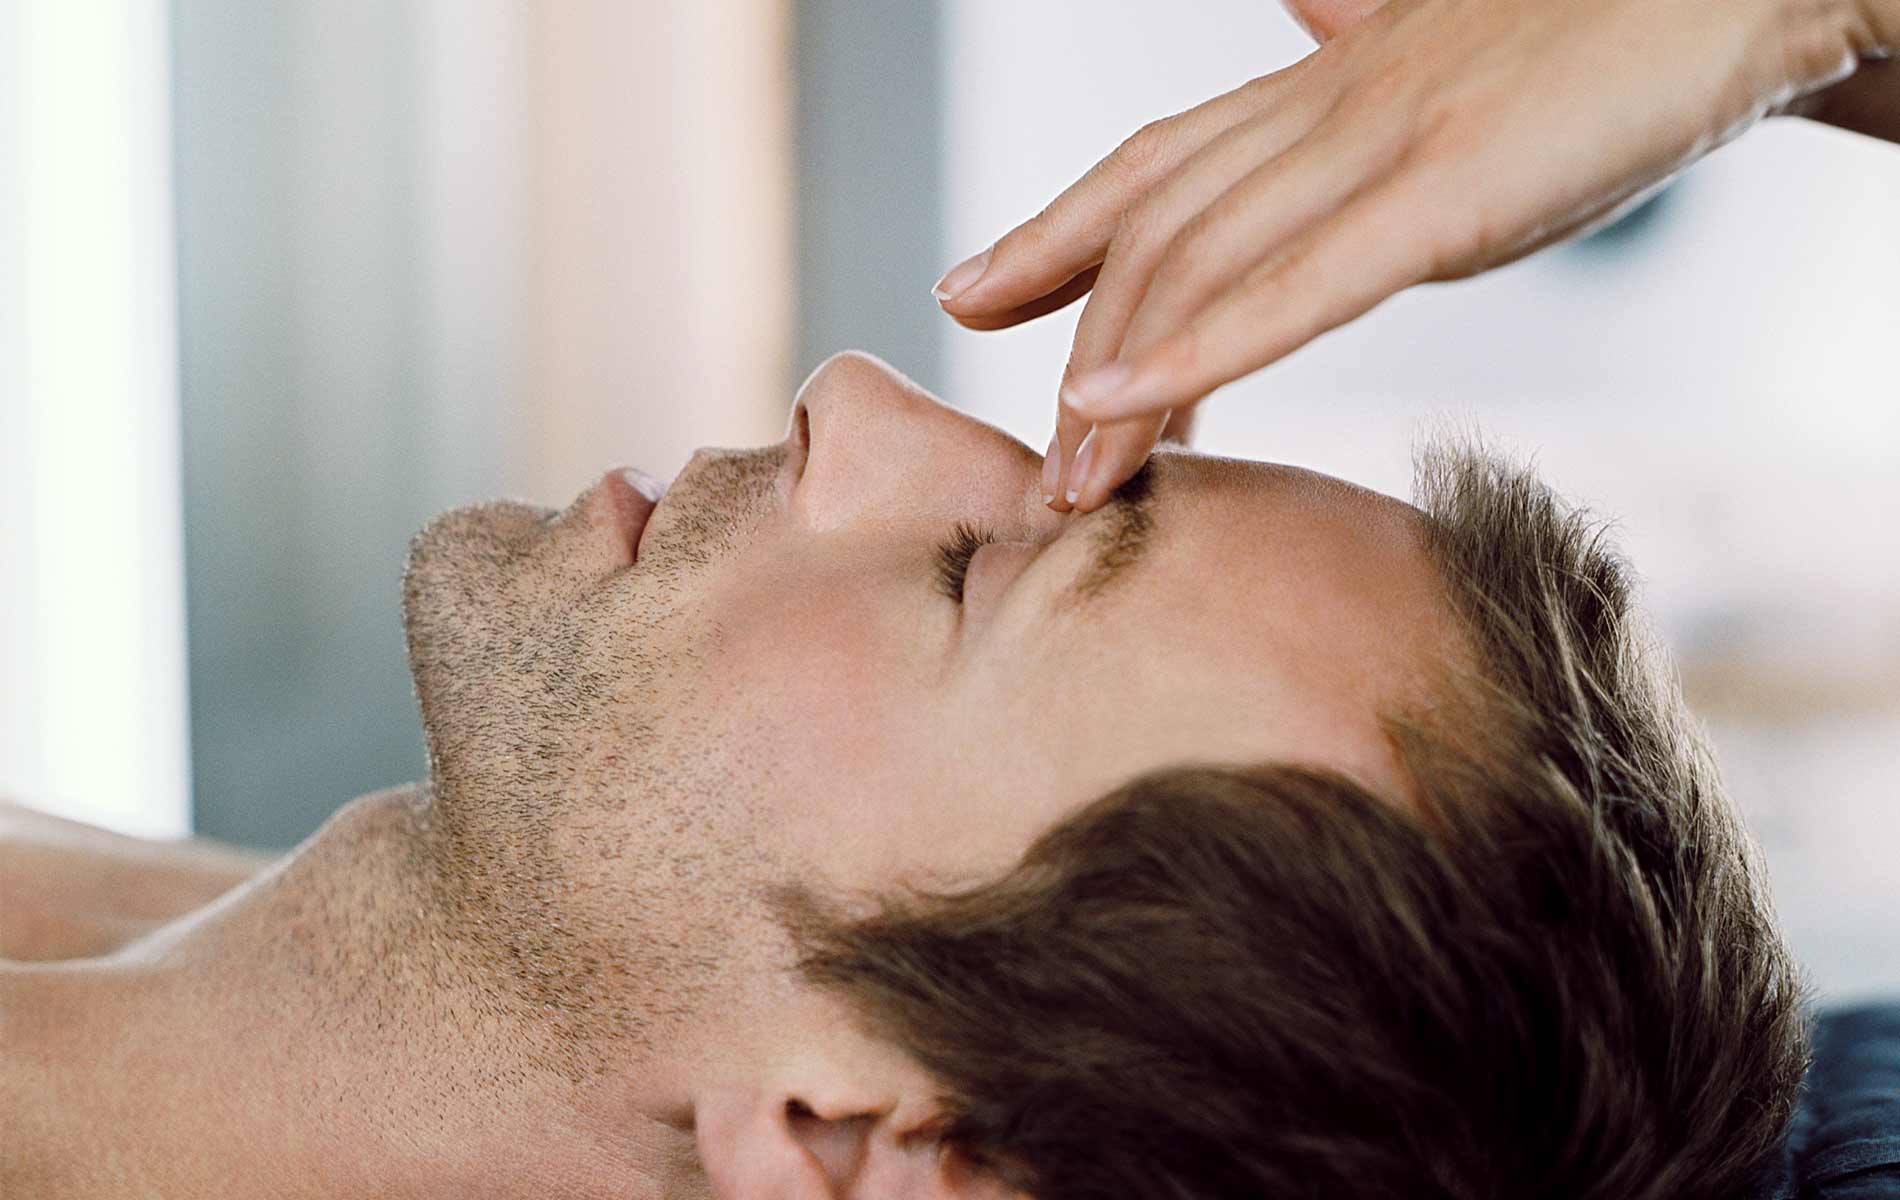 Massage guy. Массаж лица мужчине. Массаж головы мужчине. Косметология для мужчин. Массаж головы и лица мужской.